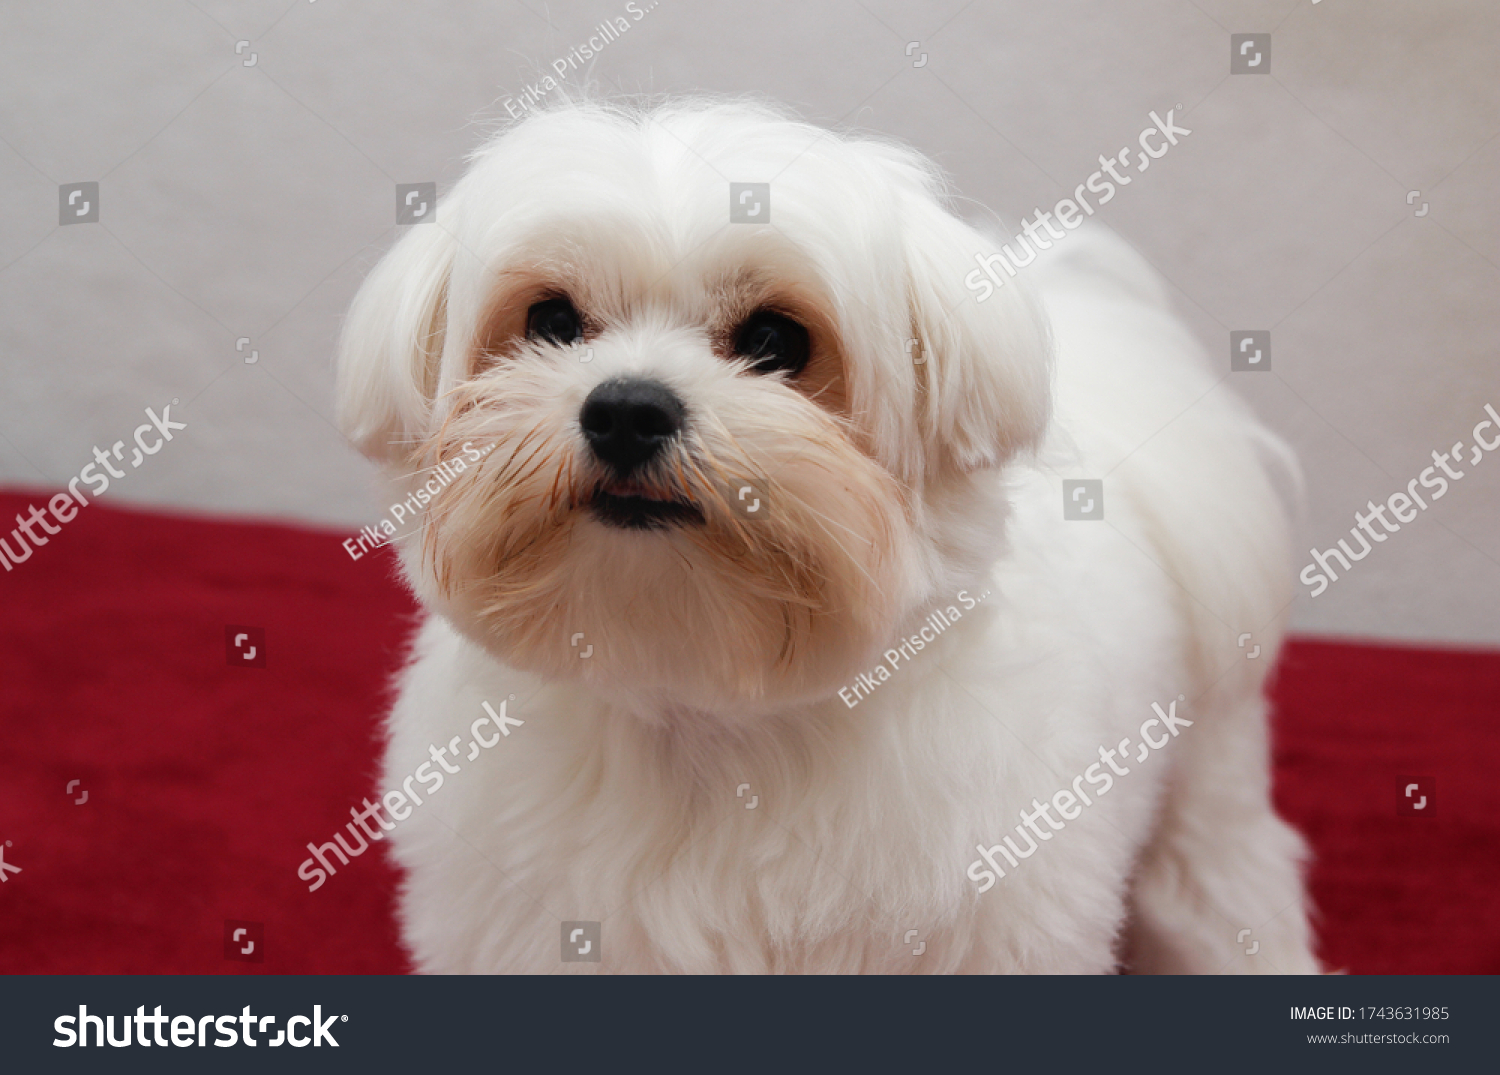 small dog maltese maltes pet #1743631985